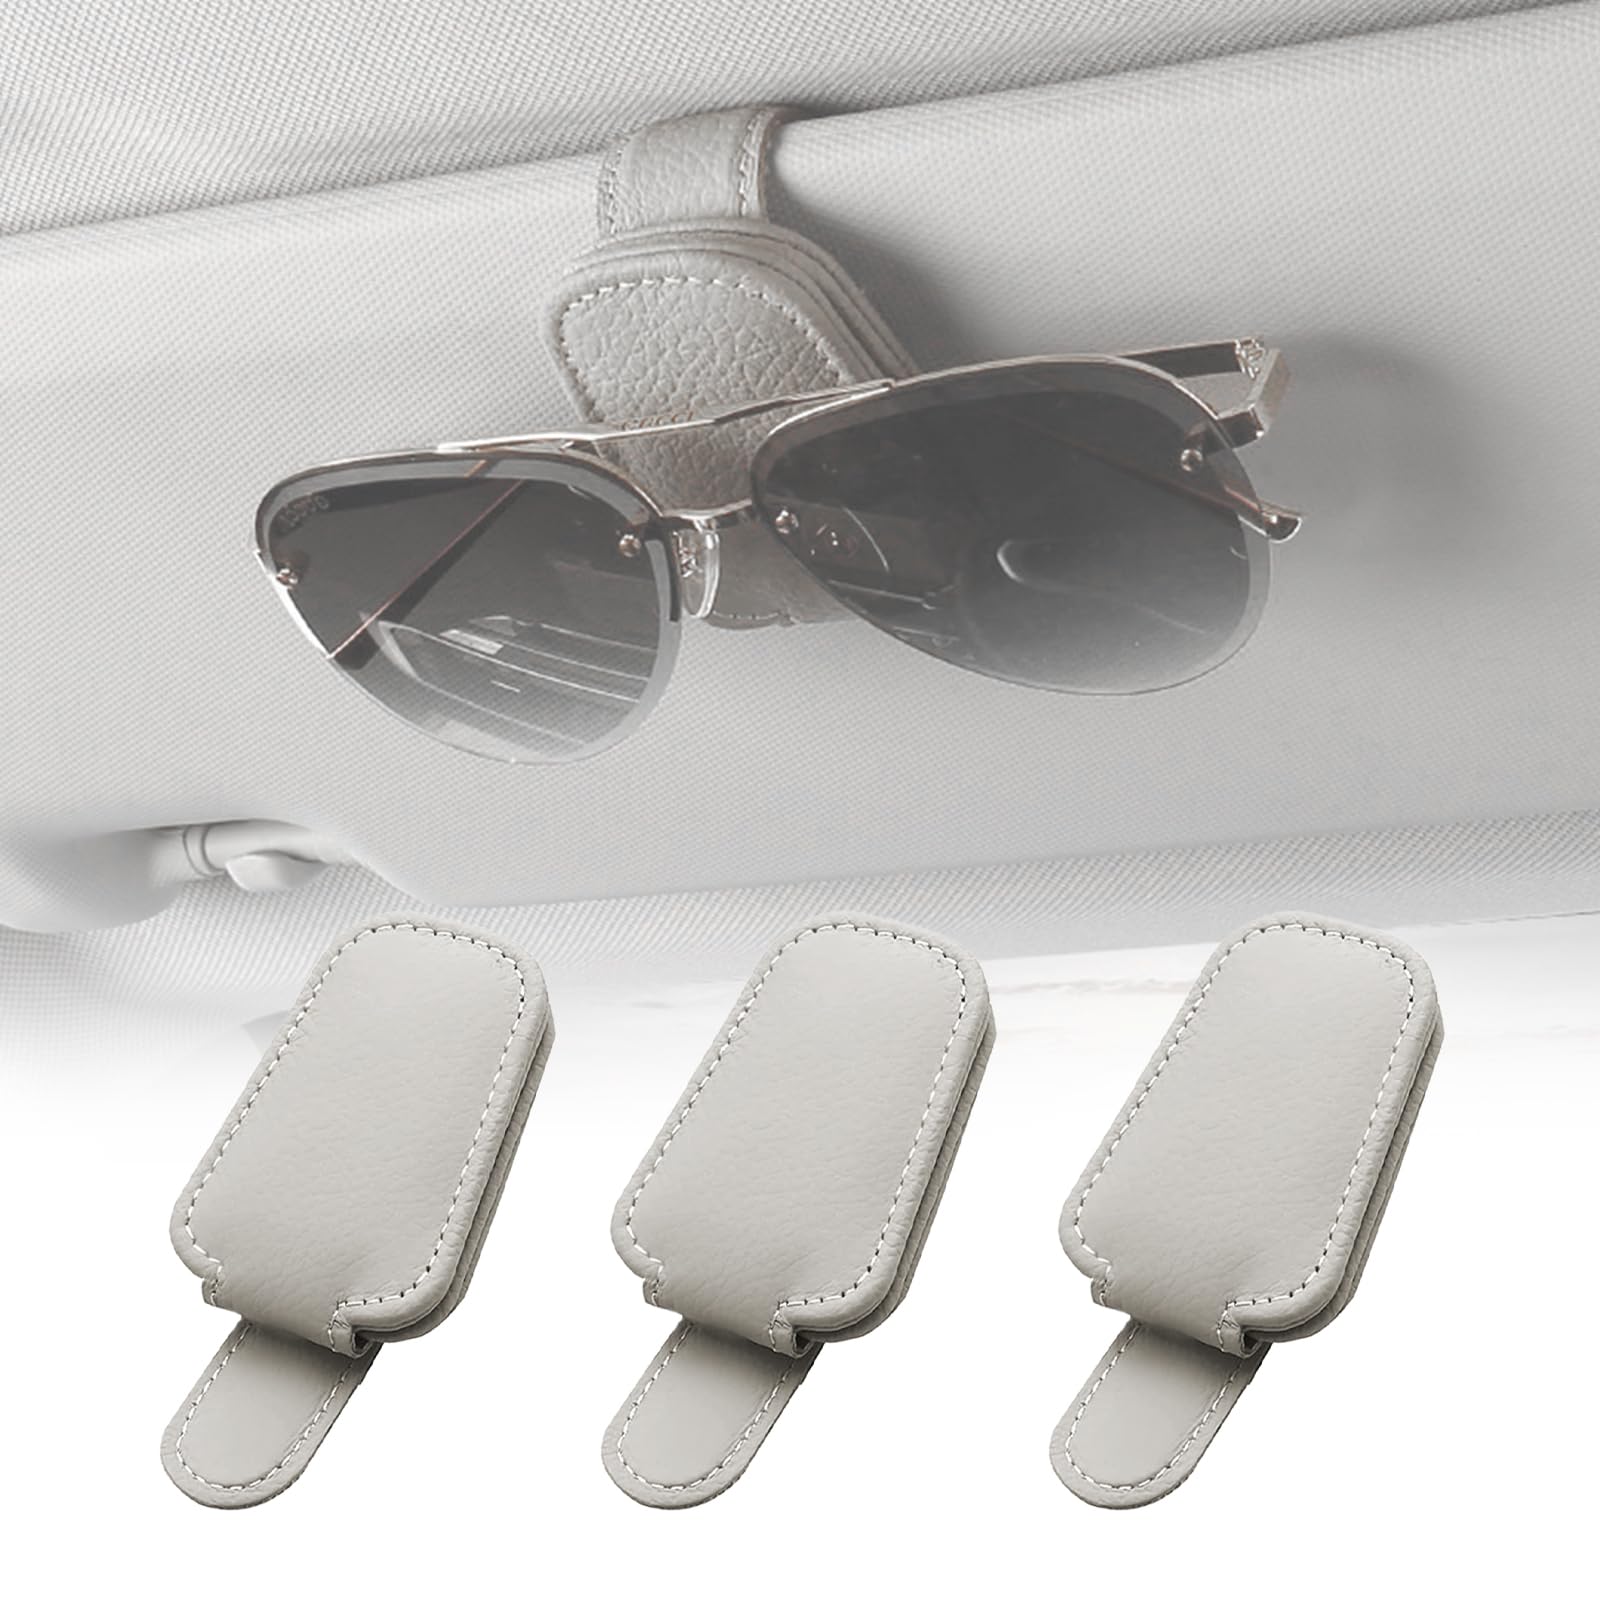 3 Stück Brillenhalter für Auto Sonnenblende, Auto Brillenhalter, Auto Visier Zubehör, Leder Auto Sonnenbrillen Halterung Ticket Clip, Magnetische Sonnenbrillenhalterung Auto für Alle Arten von Brillen von Vegena